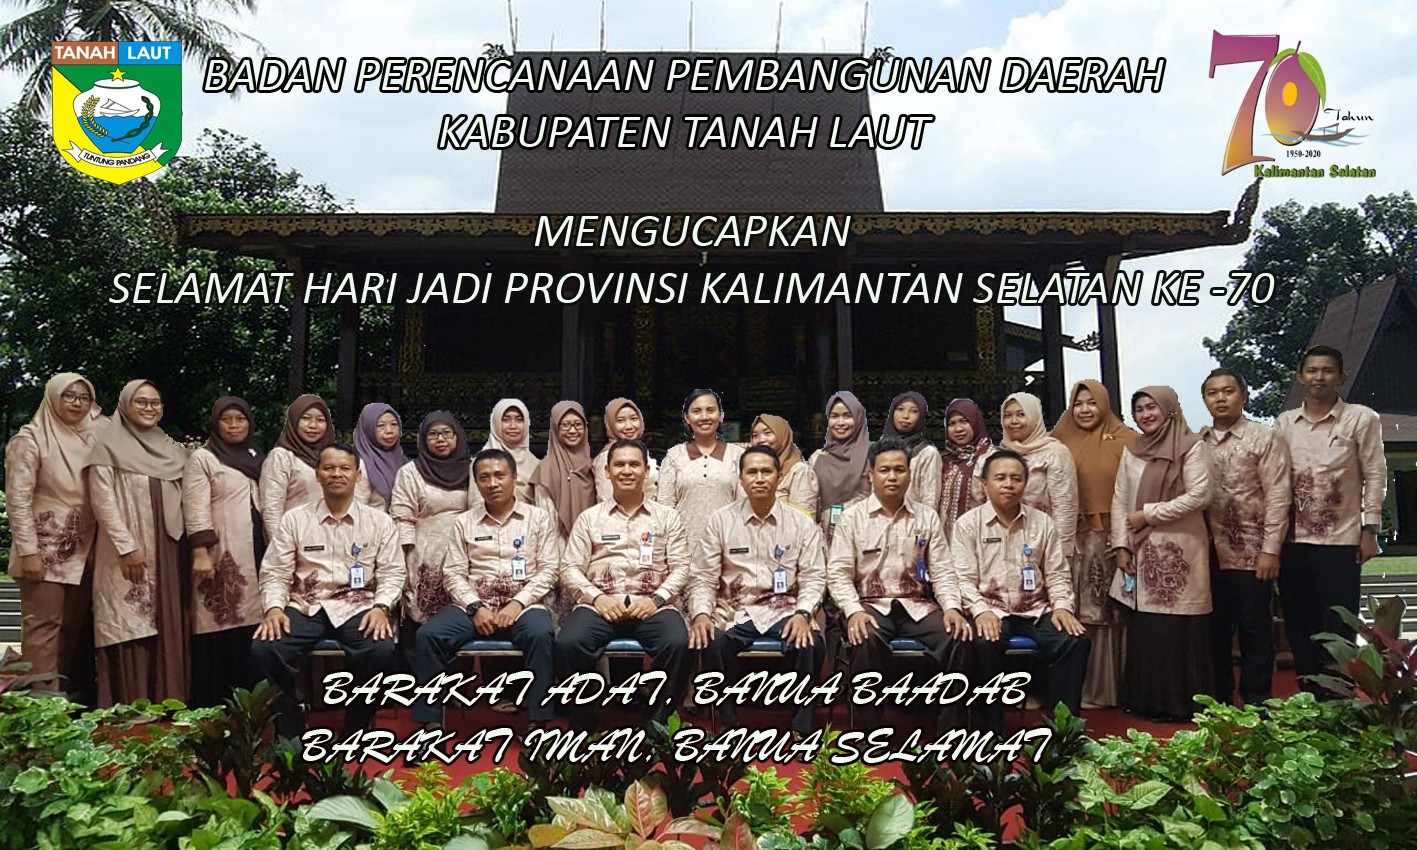 Selamat Hari Jadi Provinsi Kalimantan Selatan Ke-70